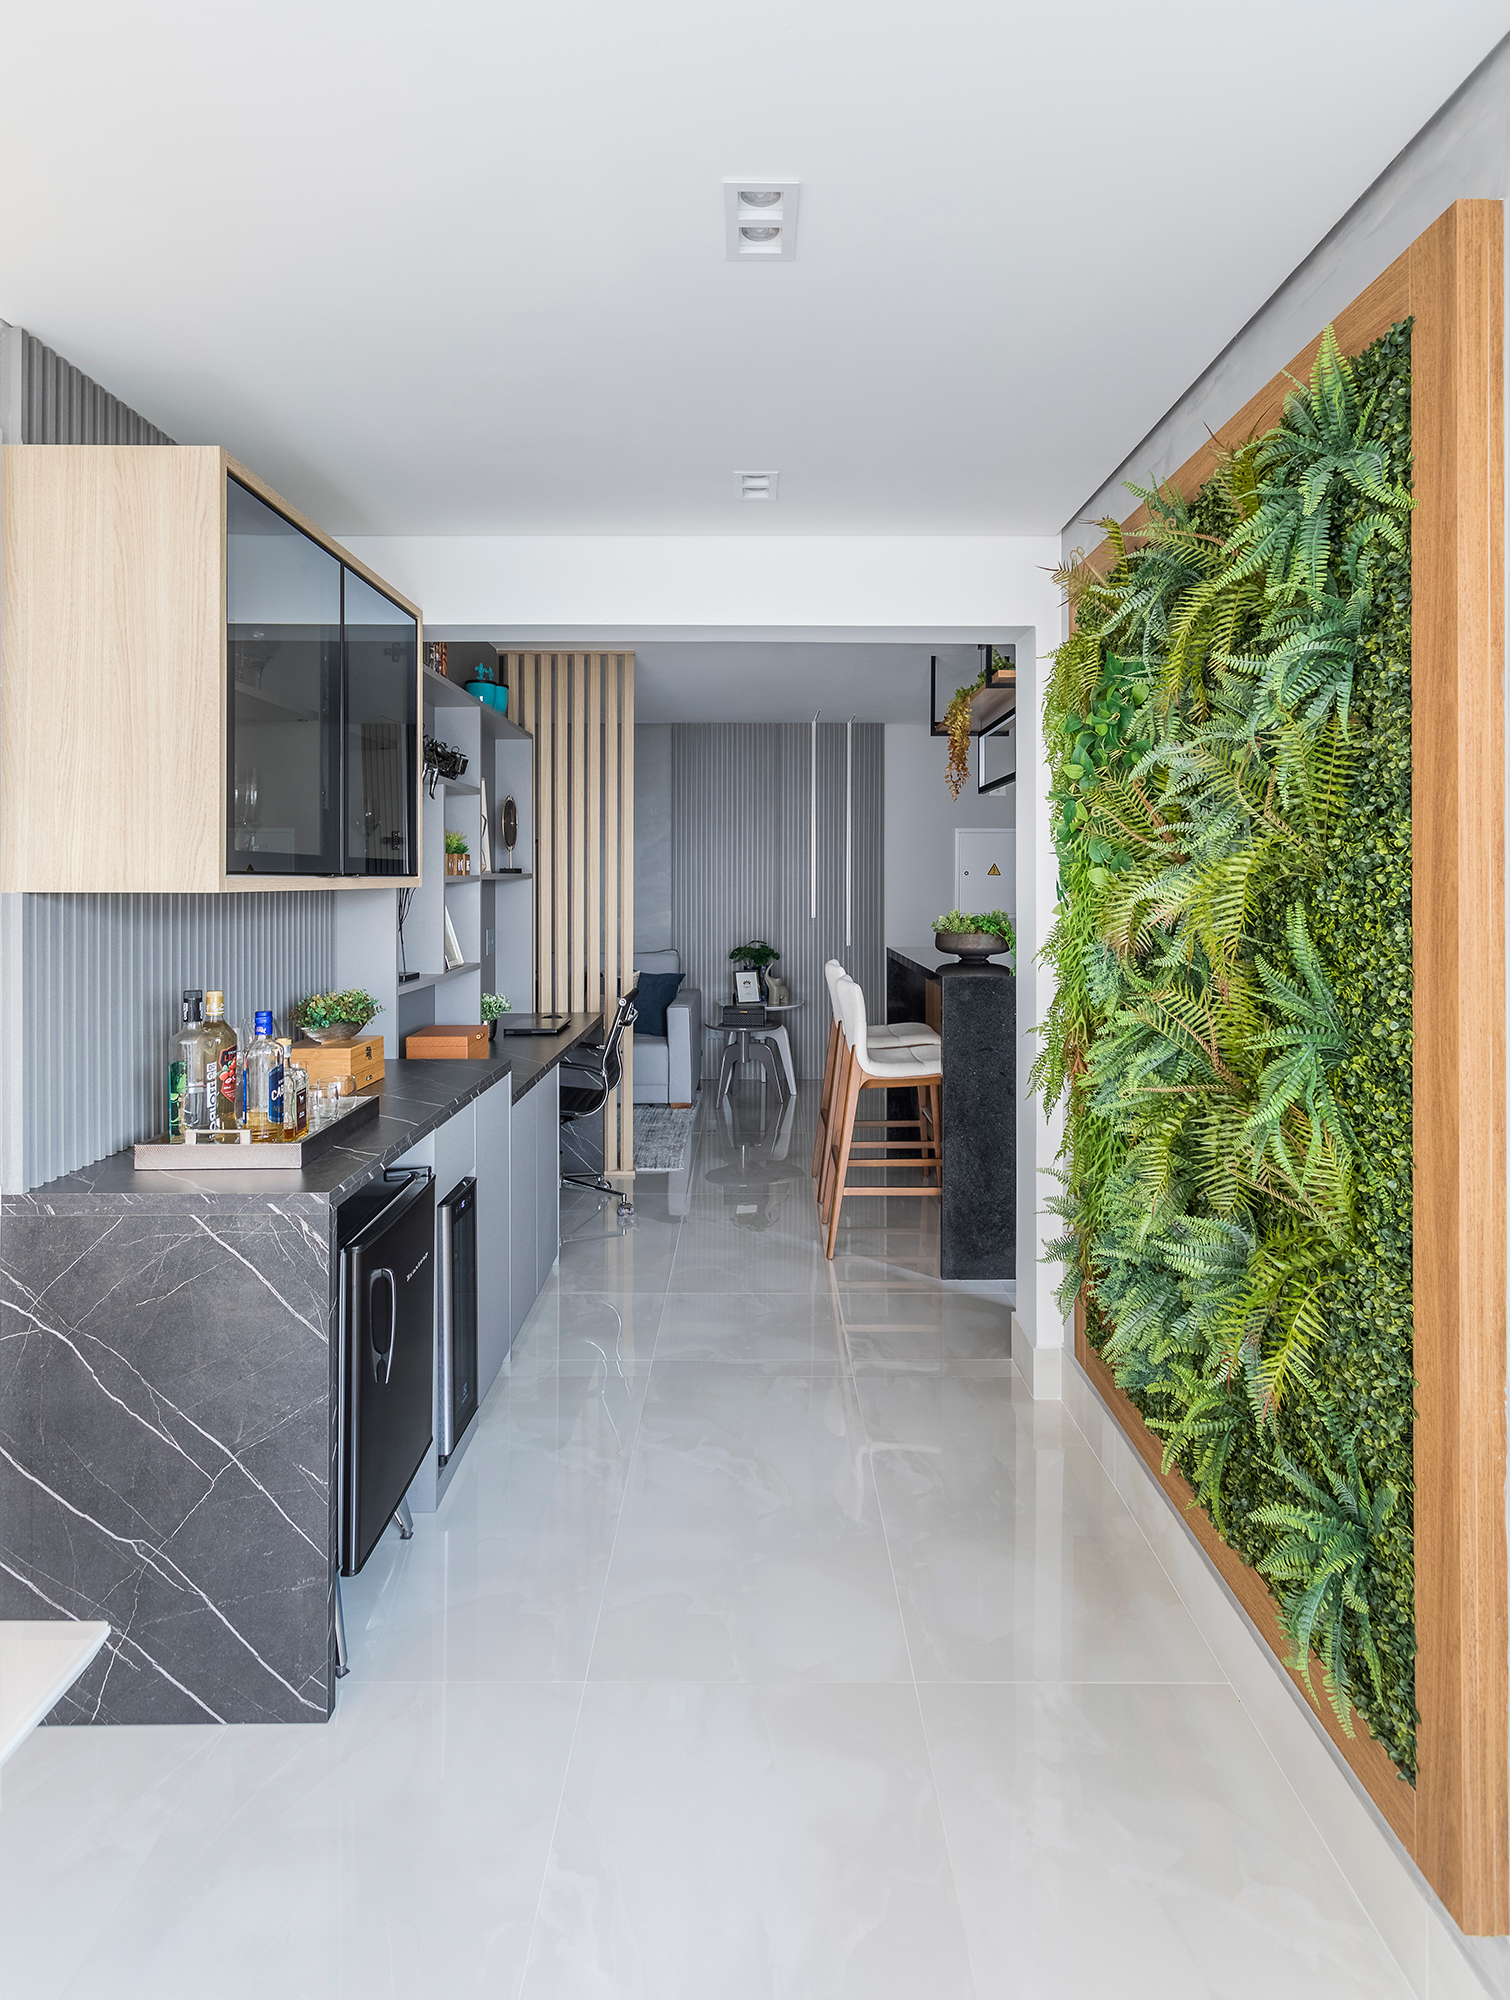 Apartamento de 82 m² ganha jardim vertical no corredor e cozinha com ilha